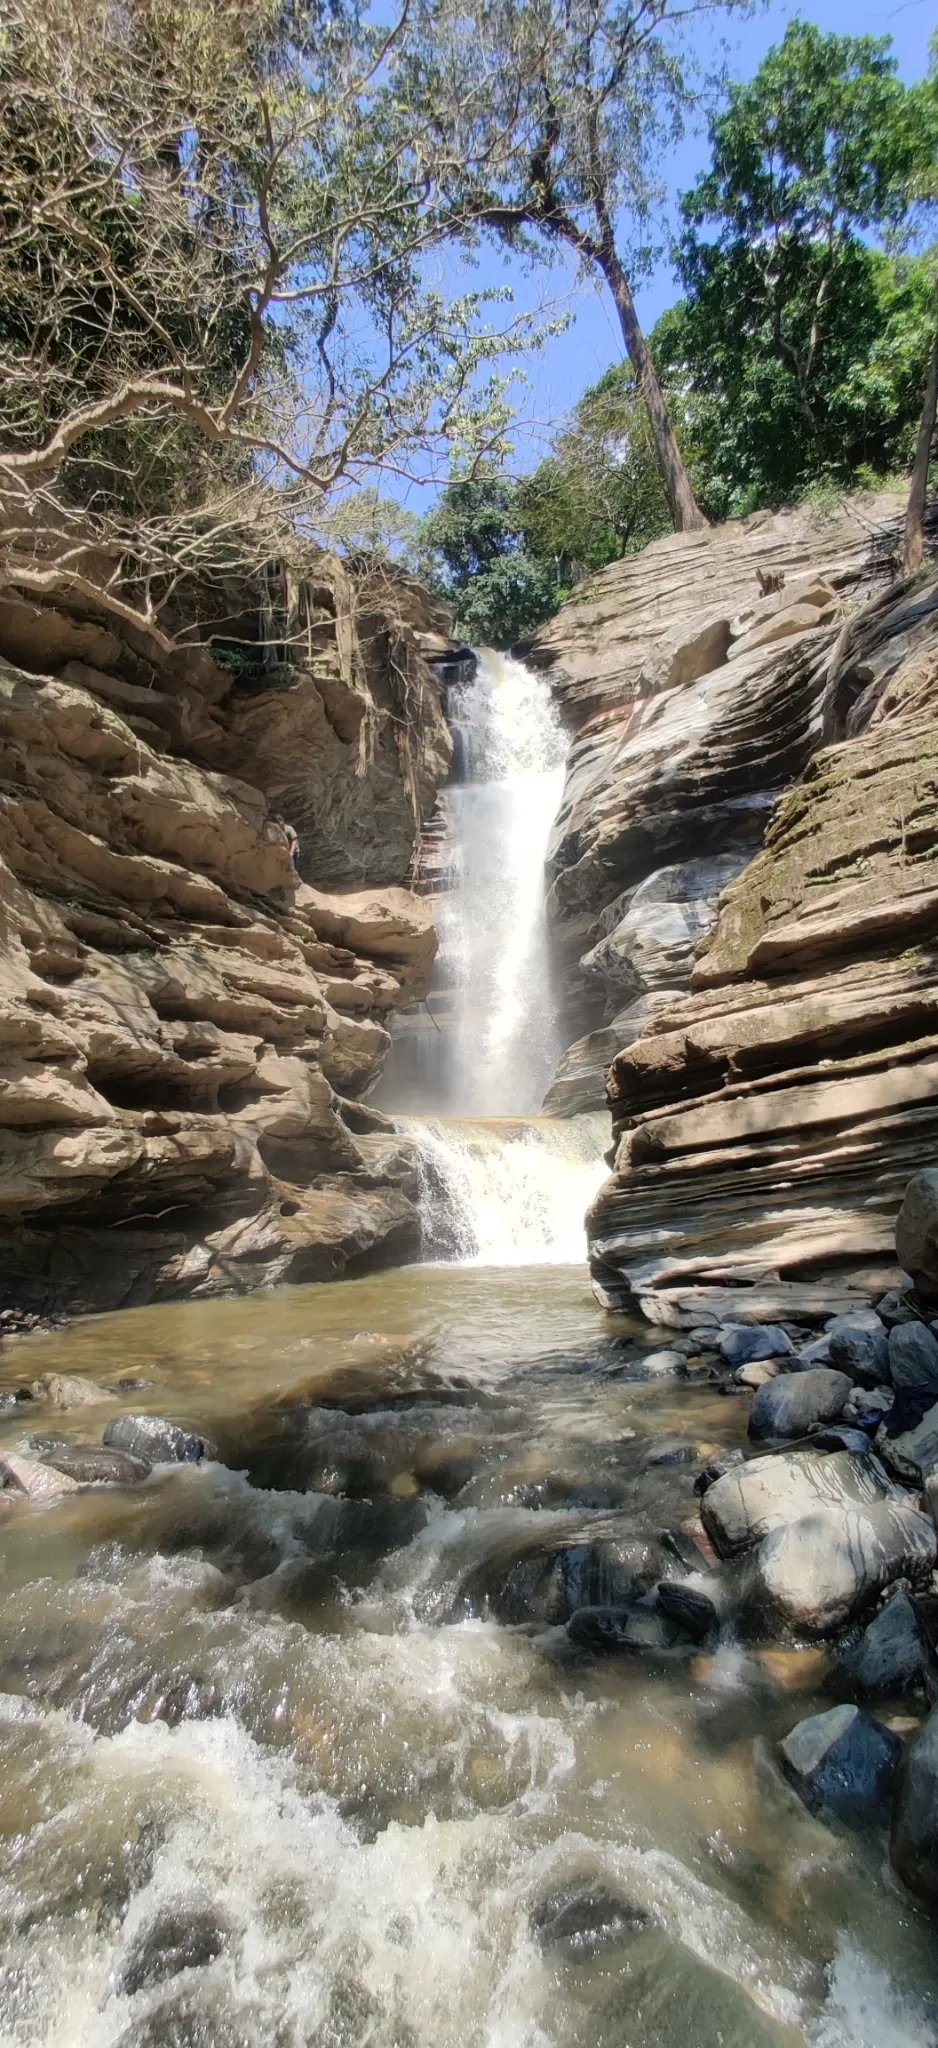 Photo of Ermayi Waterfalls By vijay hegde